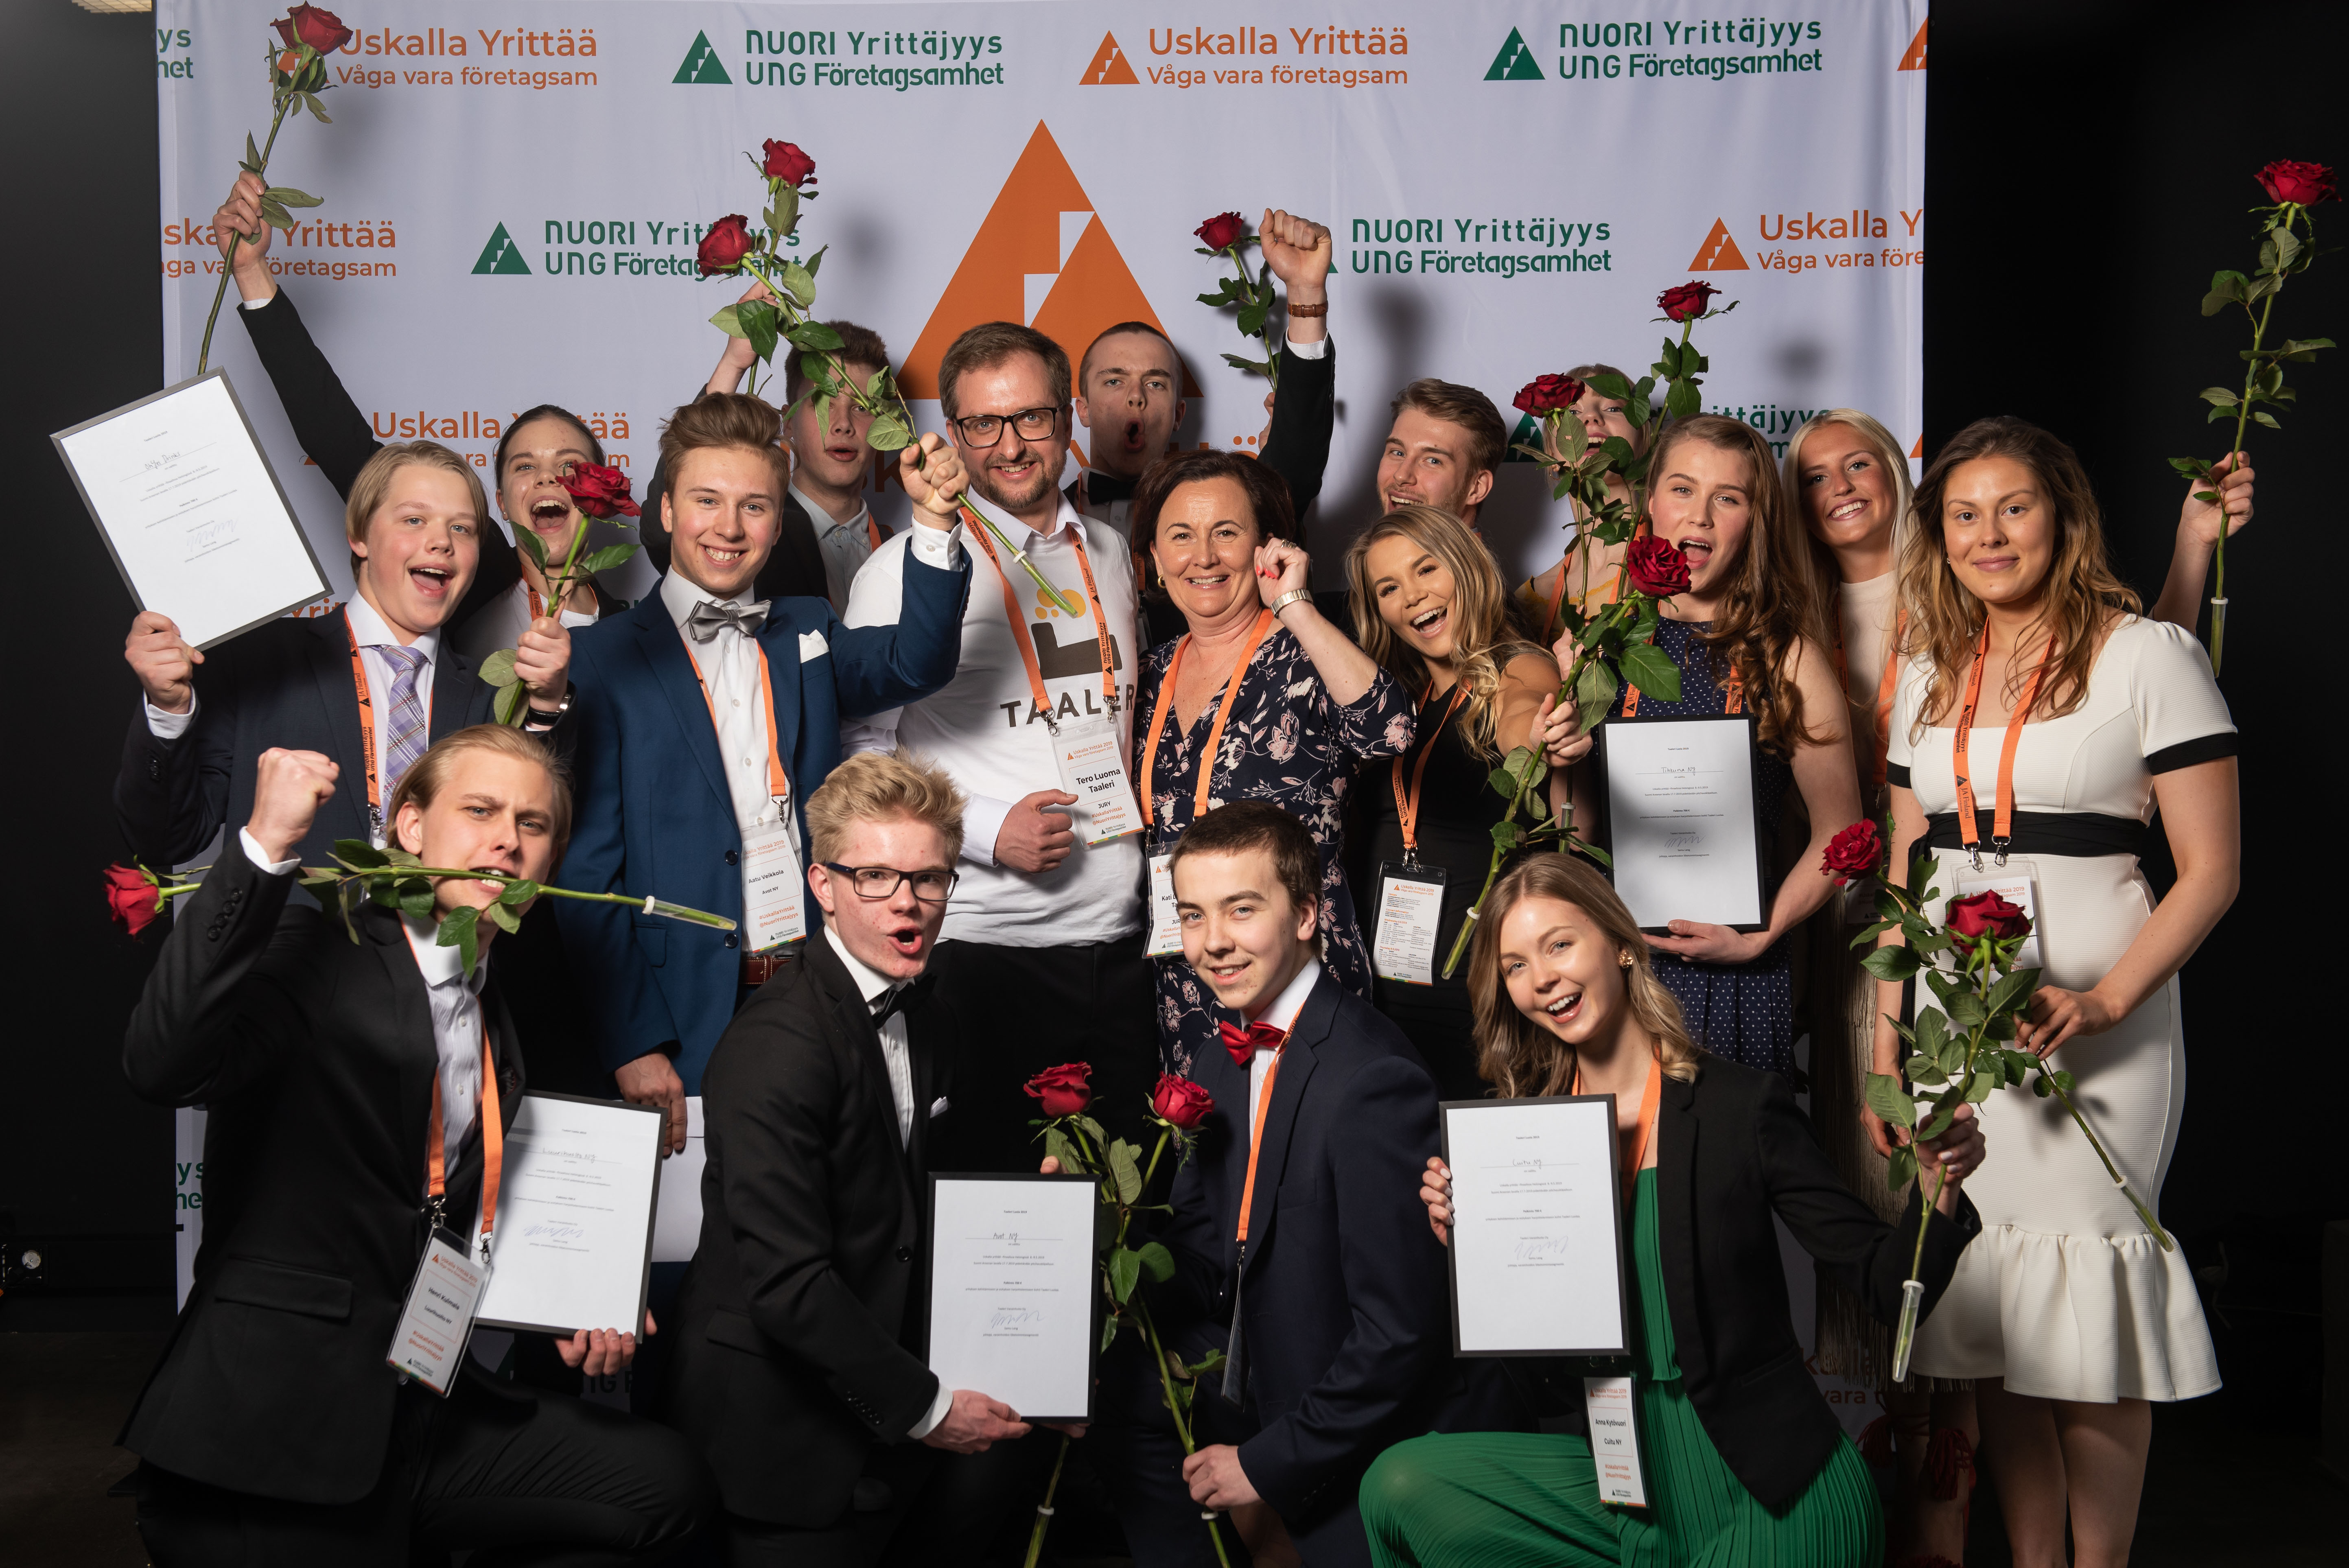 Taaleri Luolan finalistit ja tuomareita 2019